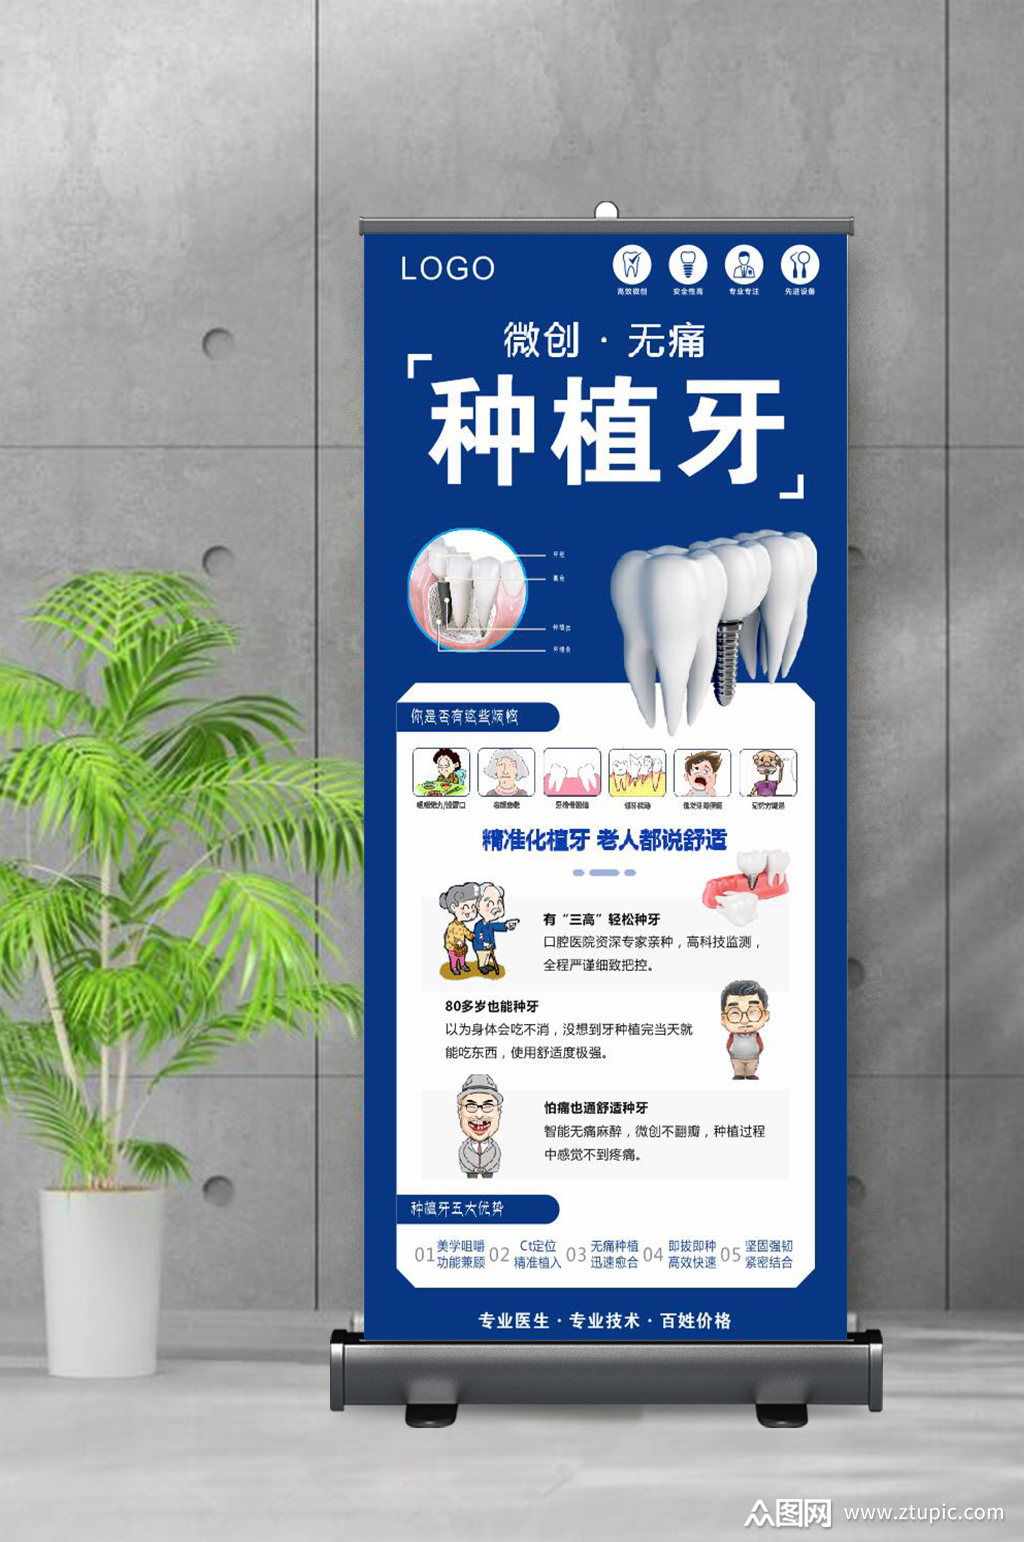 宣传海报洗牙优惠素材免费下载,本作品是由三色笔上传的原创平面广告